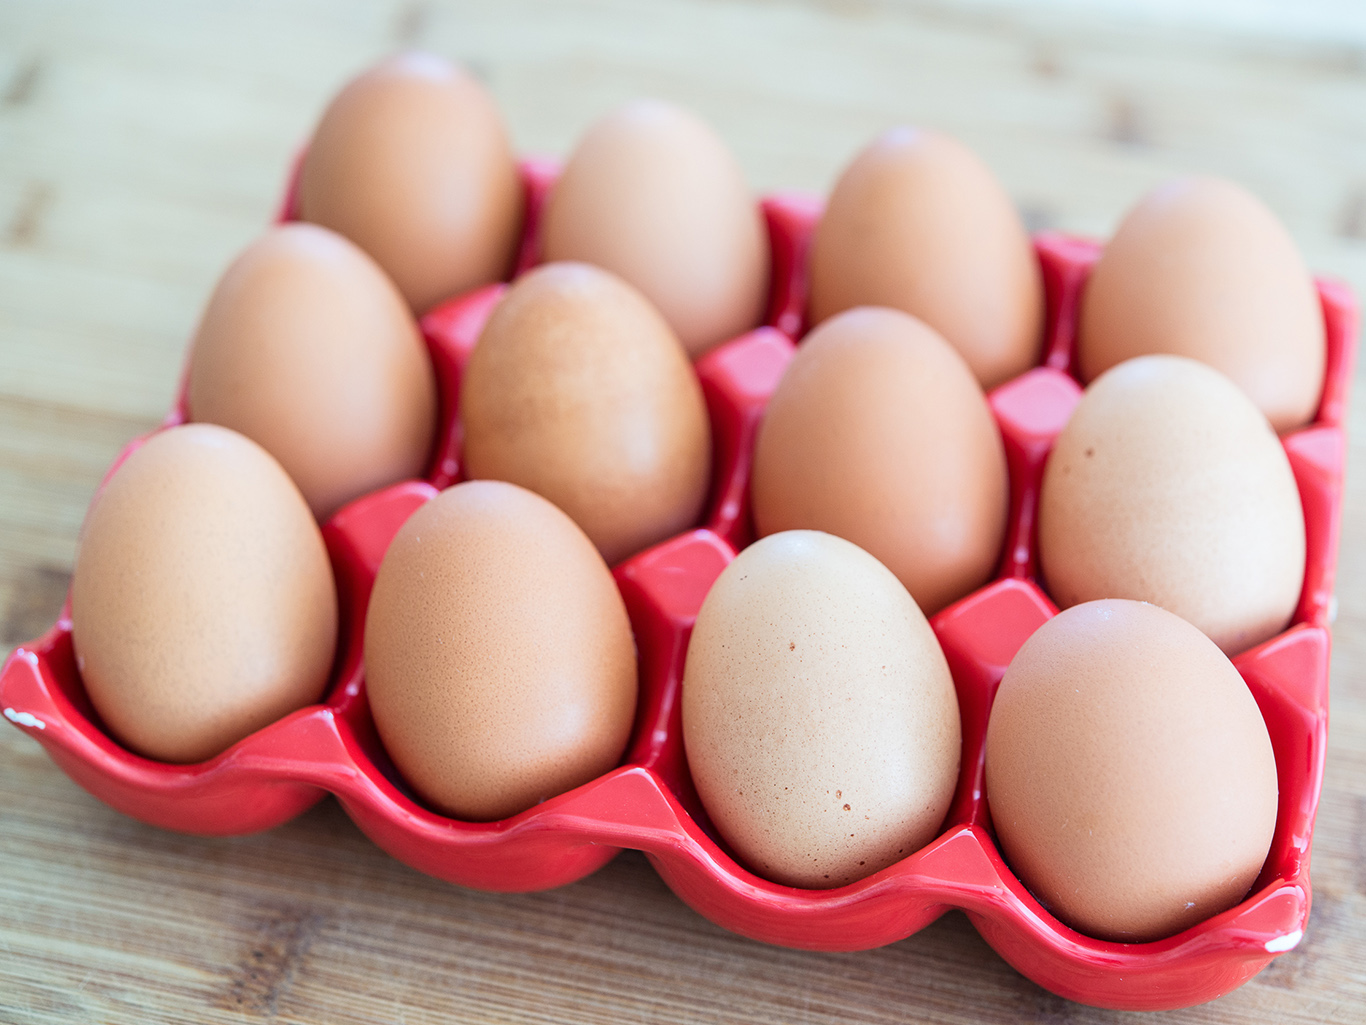 Пензенское УФАС: цены на куриные яйца производители подняли одновременно, но сговора между ними не было